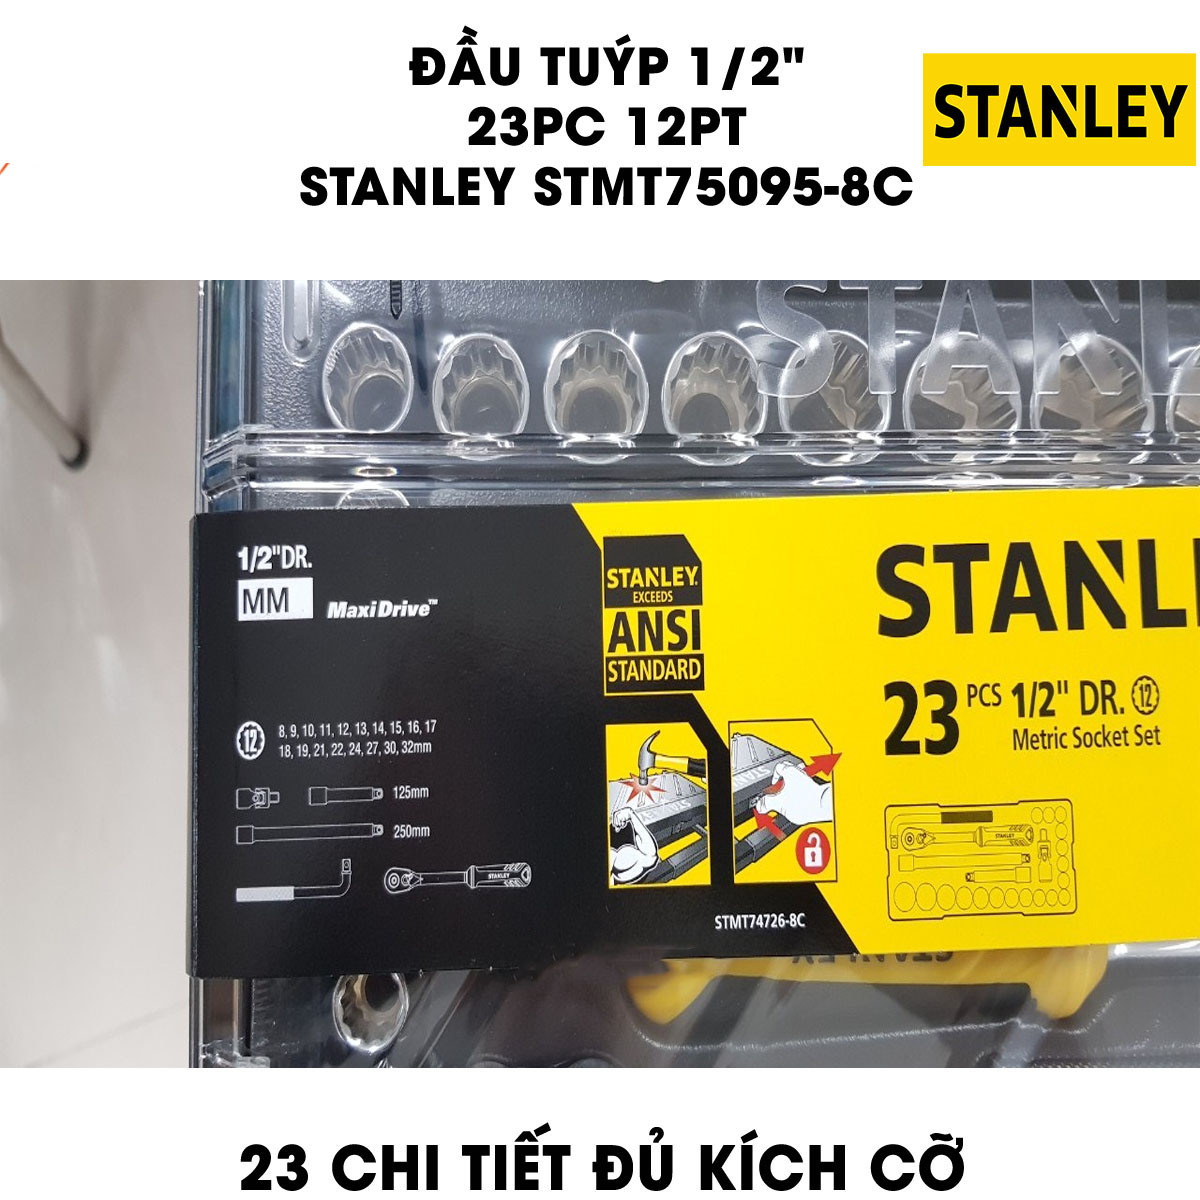 Hình ảnh 6 của mặt hàng Đầu tuýp 1/2" 12PT 23 chi tiết Stanley STMT75095-8C